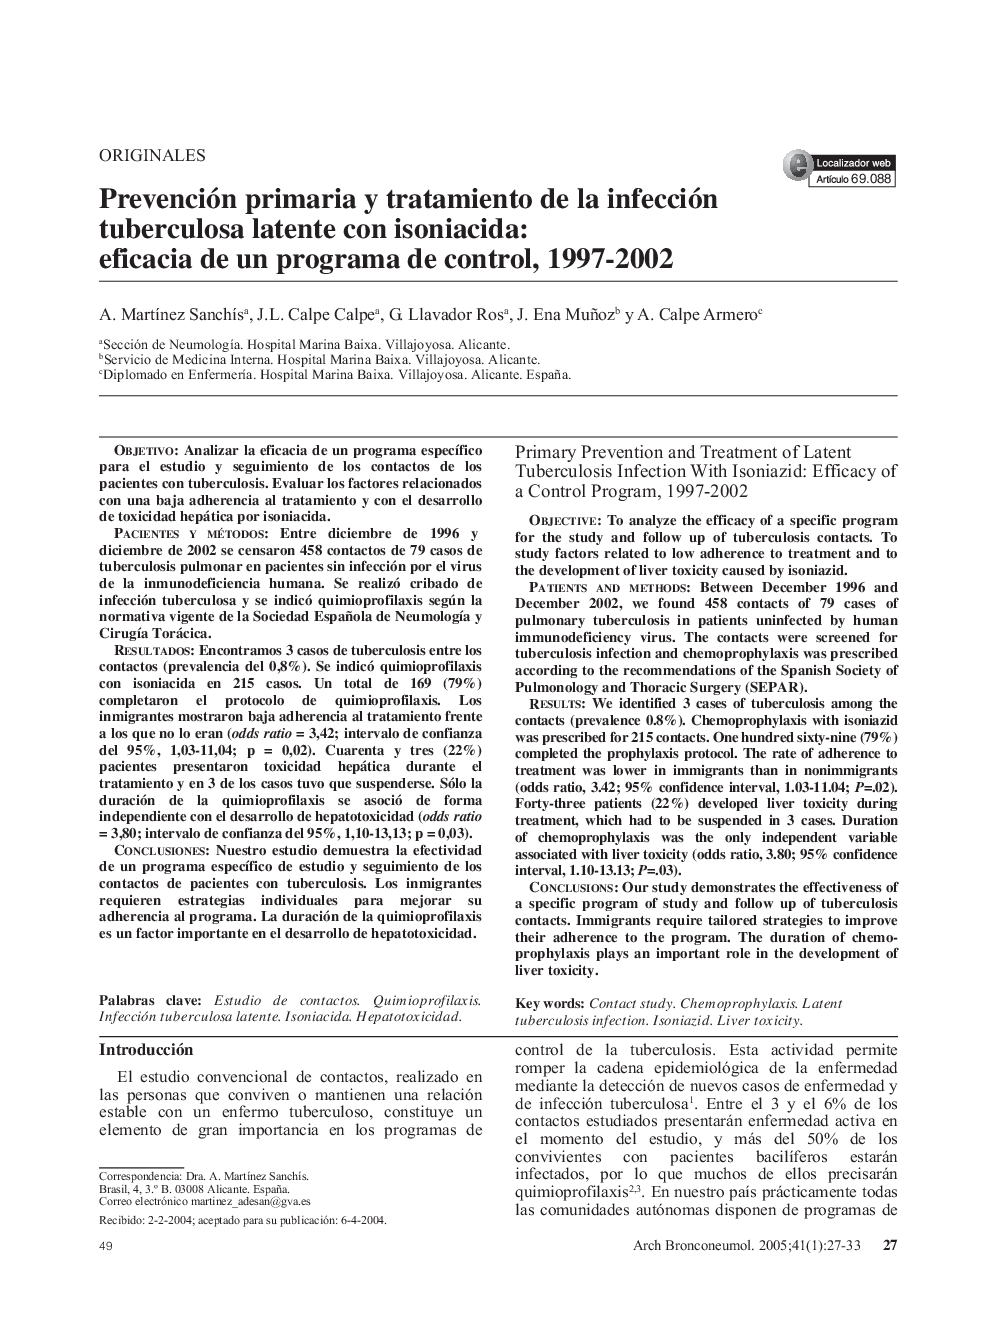 Prevención primaria y tratamiento de la infección tuberculosa latente con isoniacida: eficacia de un programa de control, 1997-2002